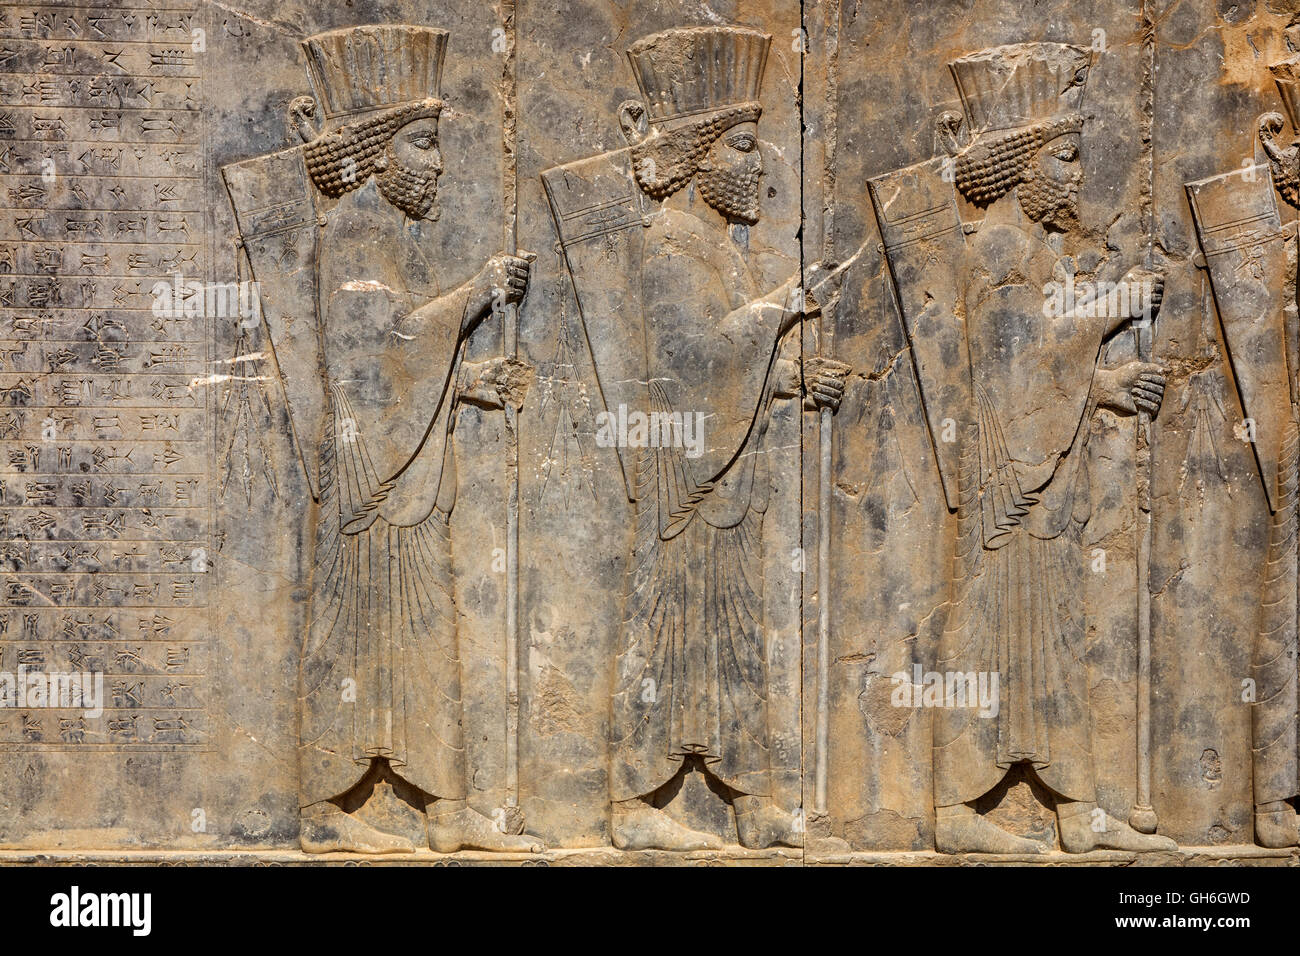 Geographie/Reisen, Iran, Persepolis, die ehemalige Hauptstadt der Achämeniden, gegründet von König Darius I, 520 v. Chr., der Palast des Königs Darius West Treppen, Relief, Detail, Persische guardian Soldaten, Additional-Rights - Clearance-Info - Not-Available Stockfoto